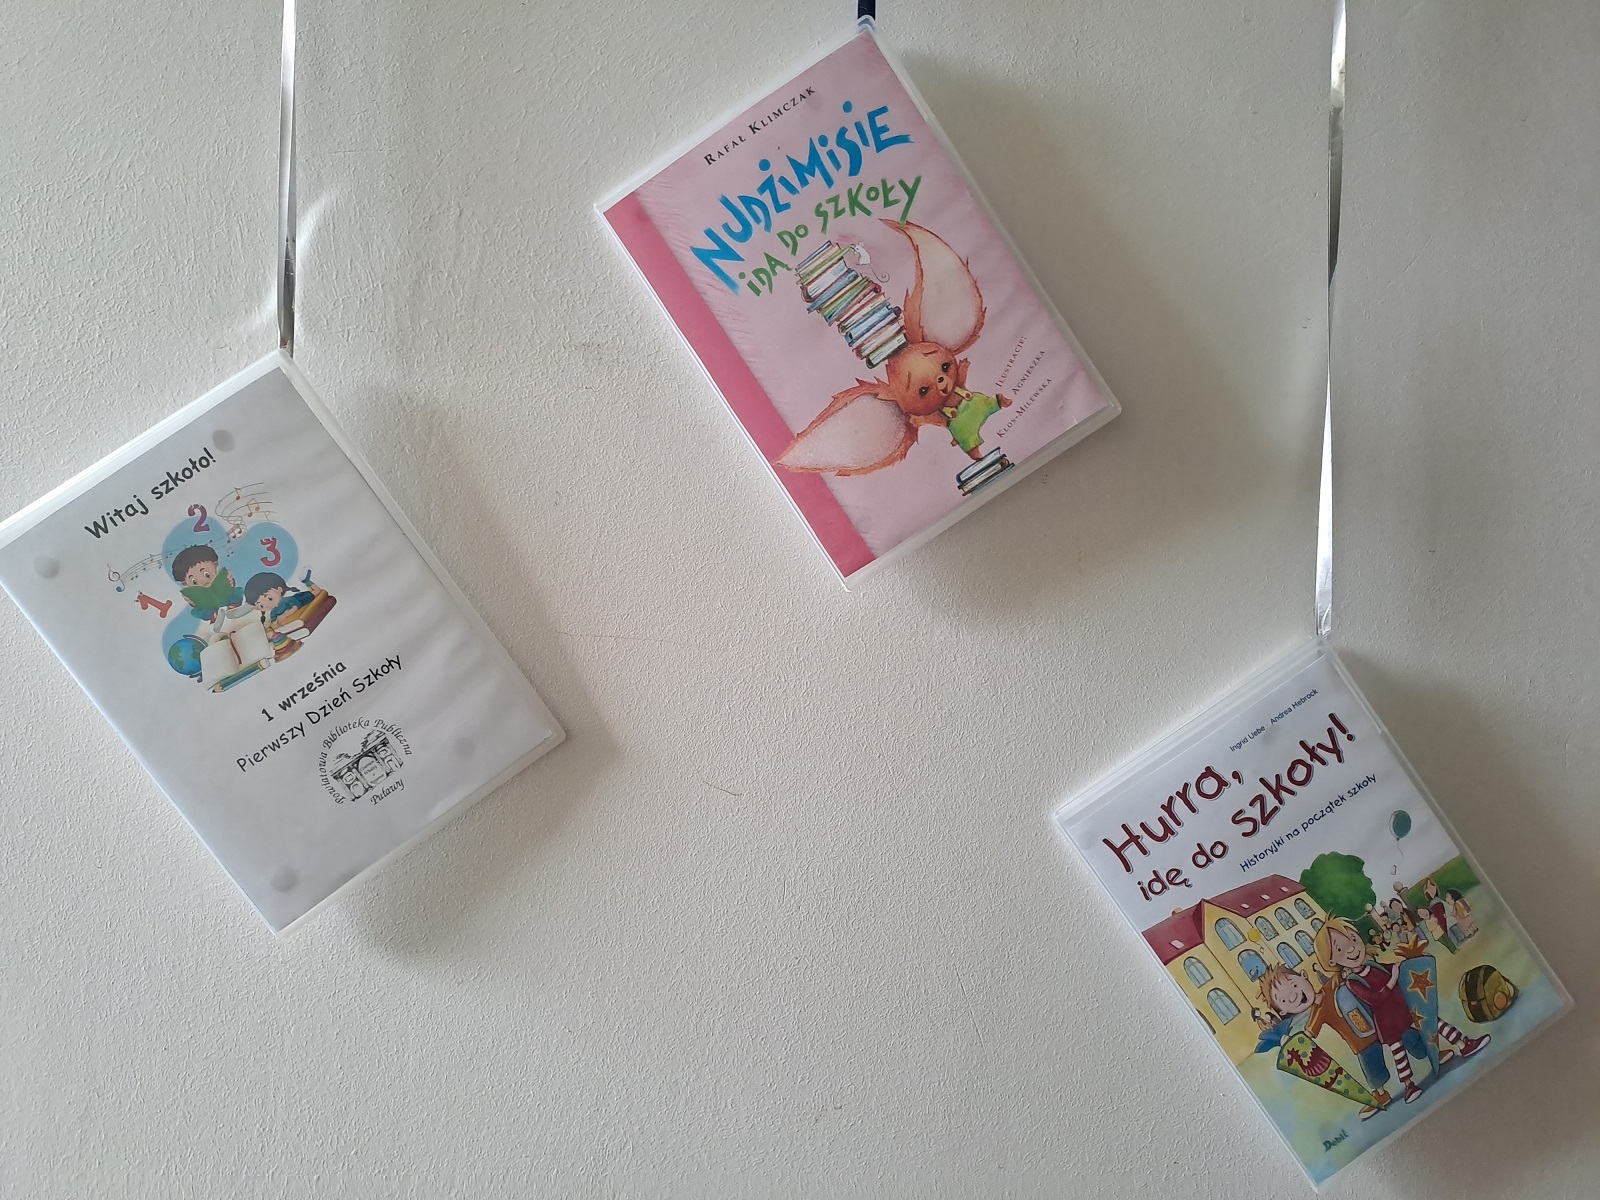 Zdjęcie prezentuje wystawę powieszoną na korytarzu przed biblioteką prezentującą różne okładki książek dla dzieci, w tytule których pojawia się wyraz szkoła. 